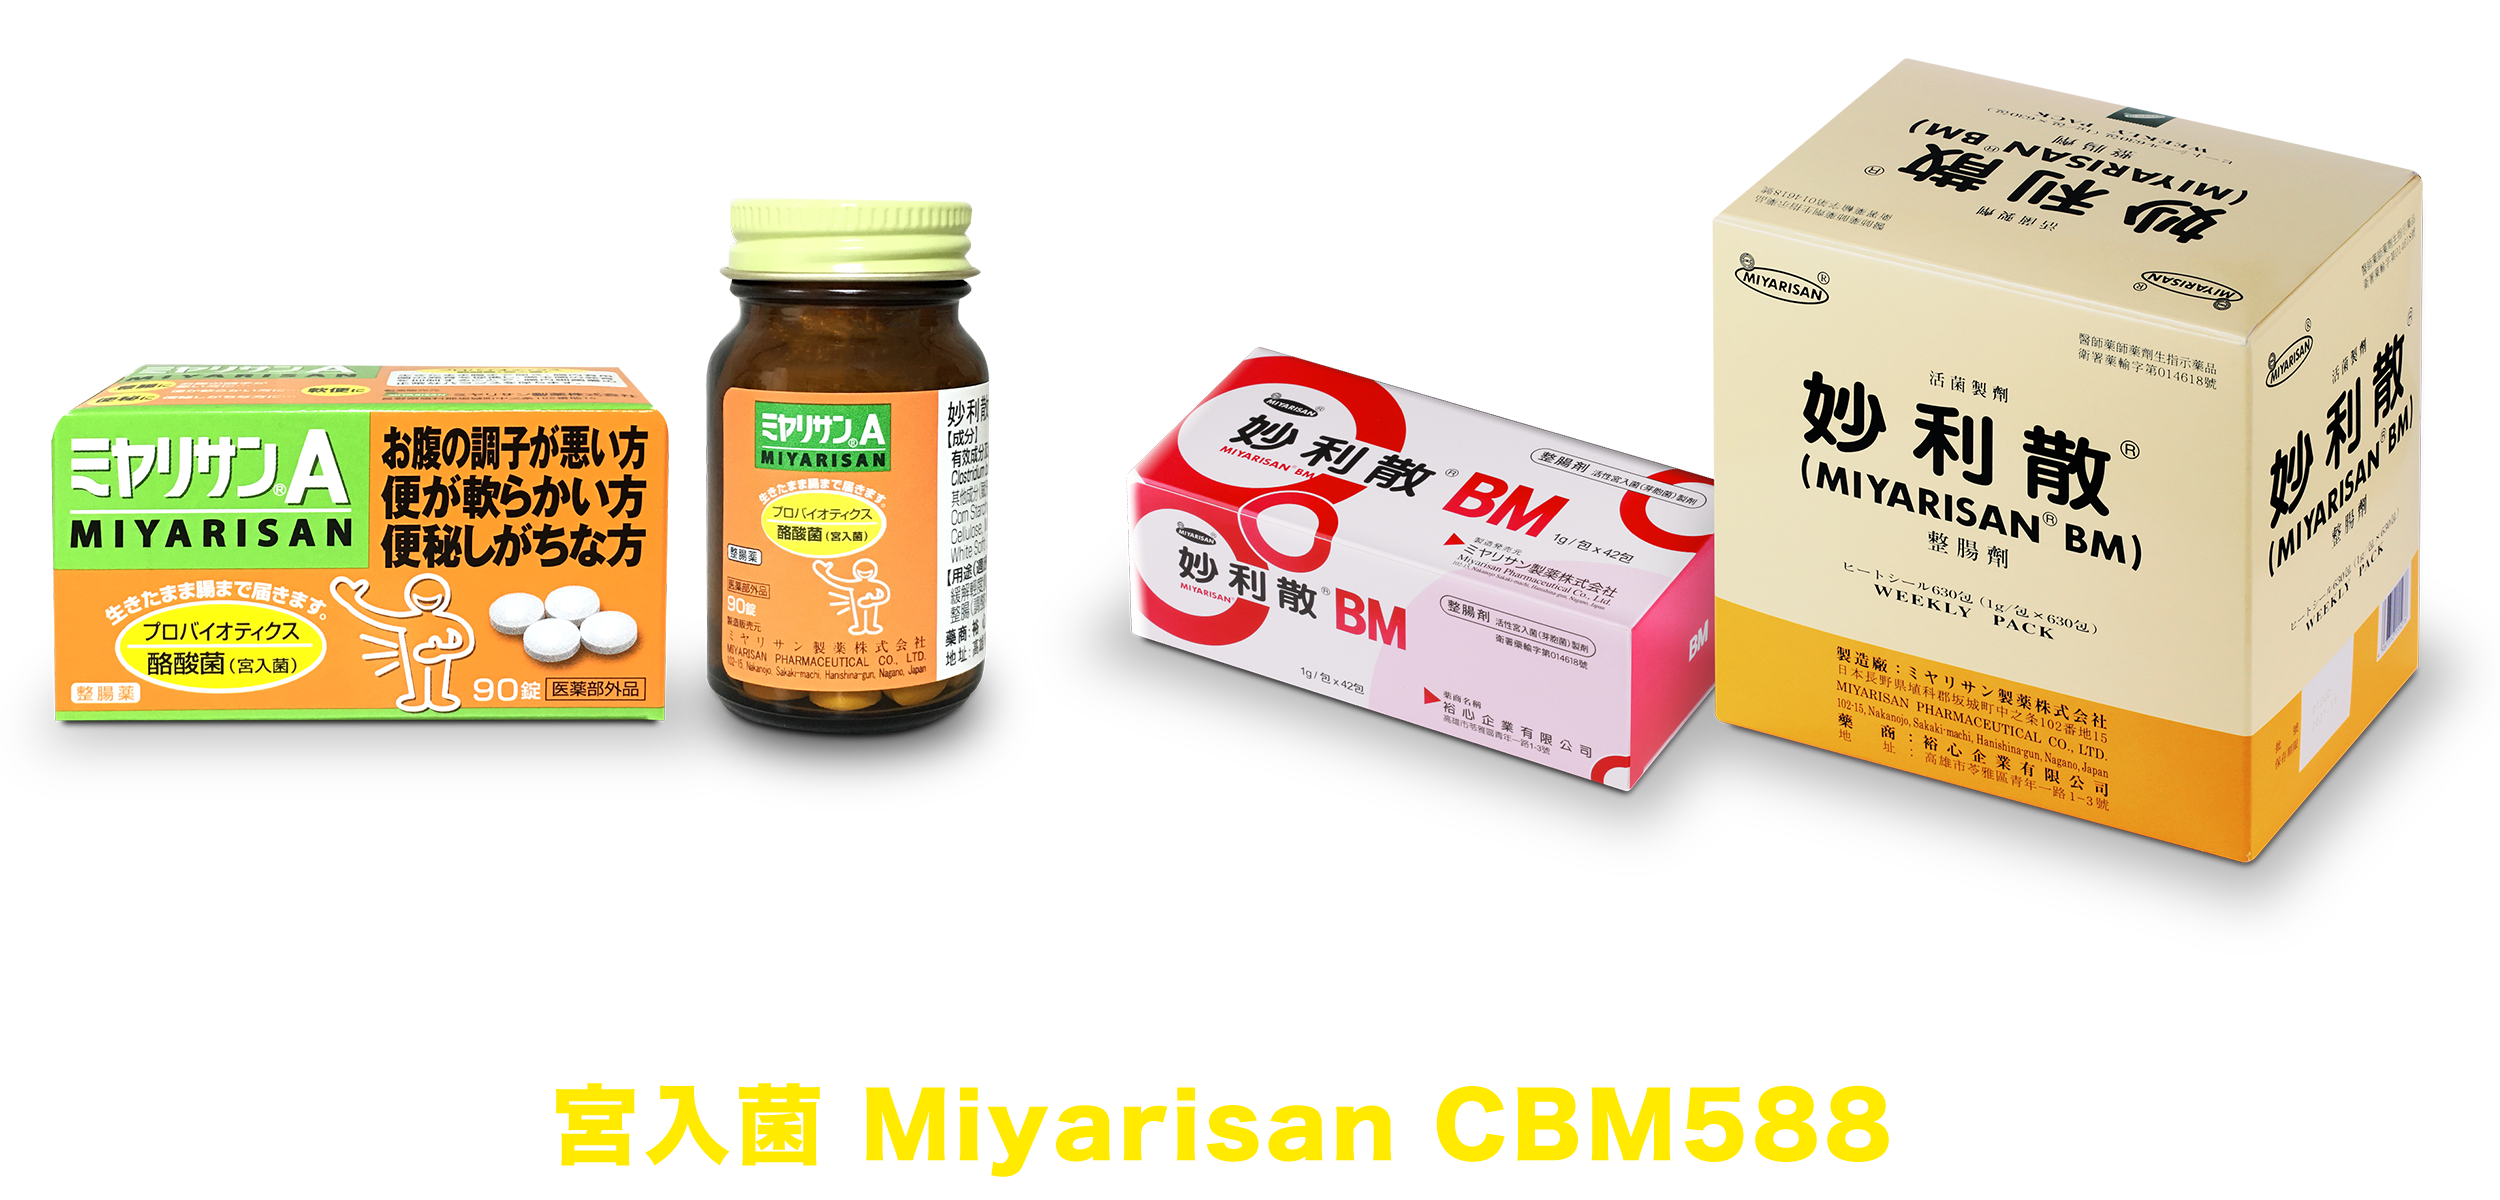 妙利散主要成分為 Miyarisan CBM588 ⼜稱為宮入菌，屬於酪酸菌的一種。